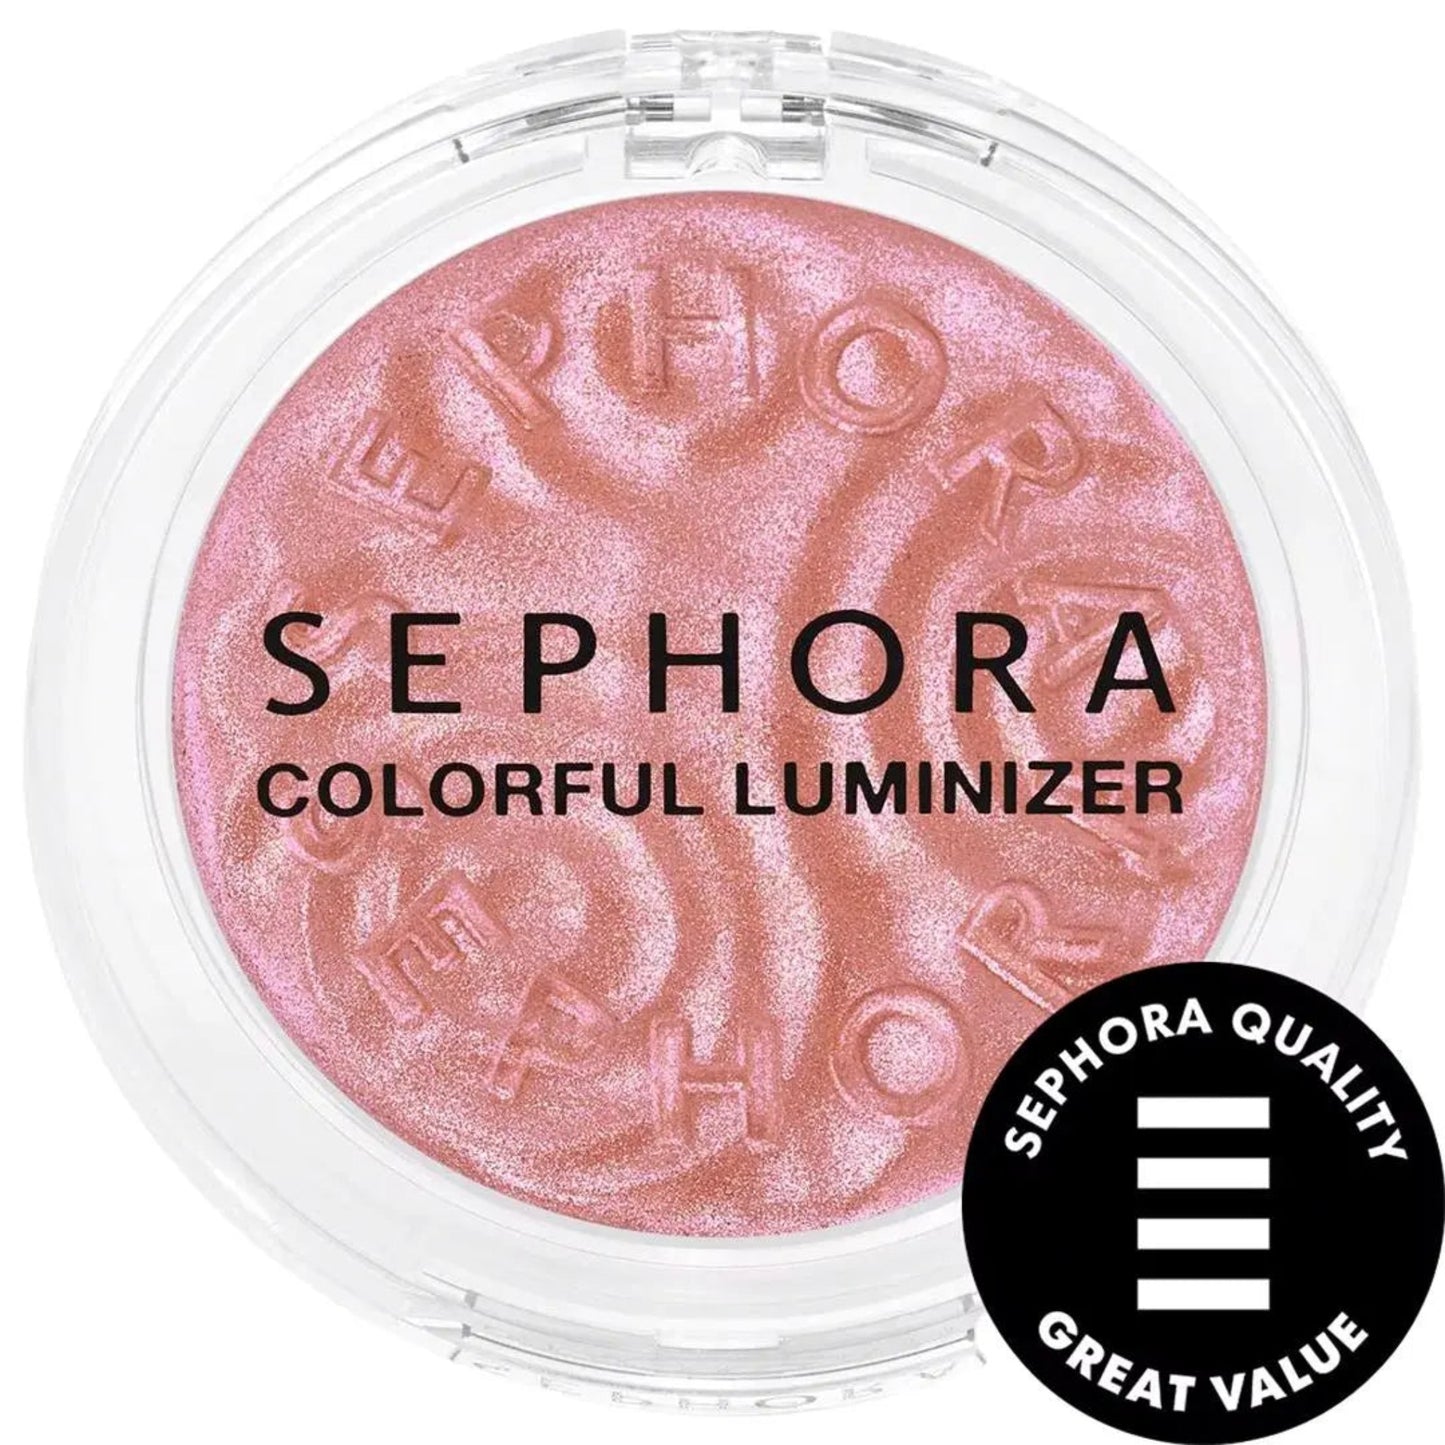 Sephora Colorful Luminizer 03 Pink Flash Sephora